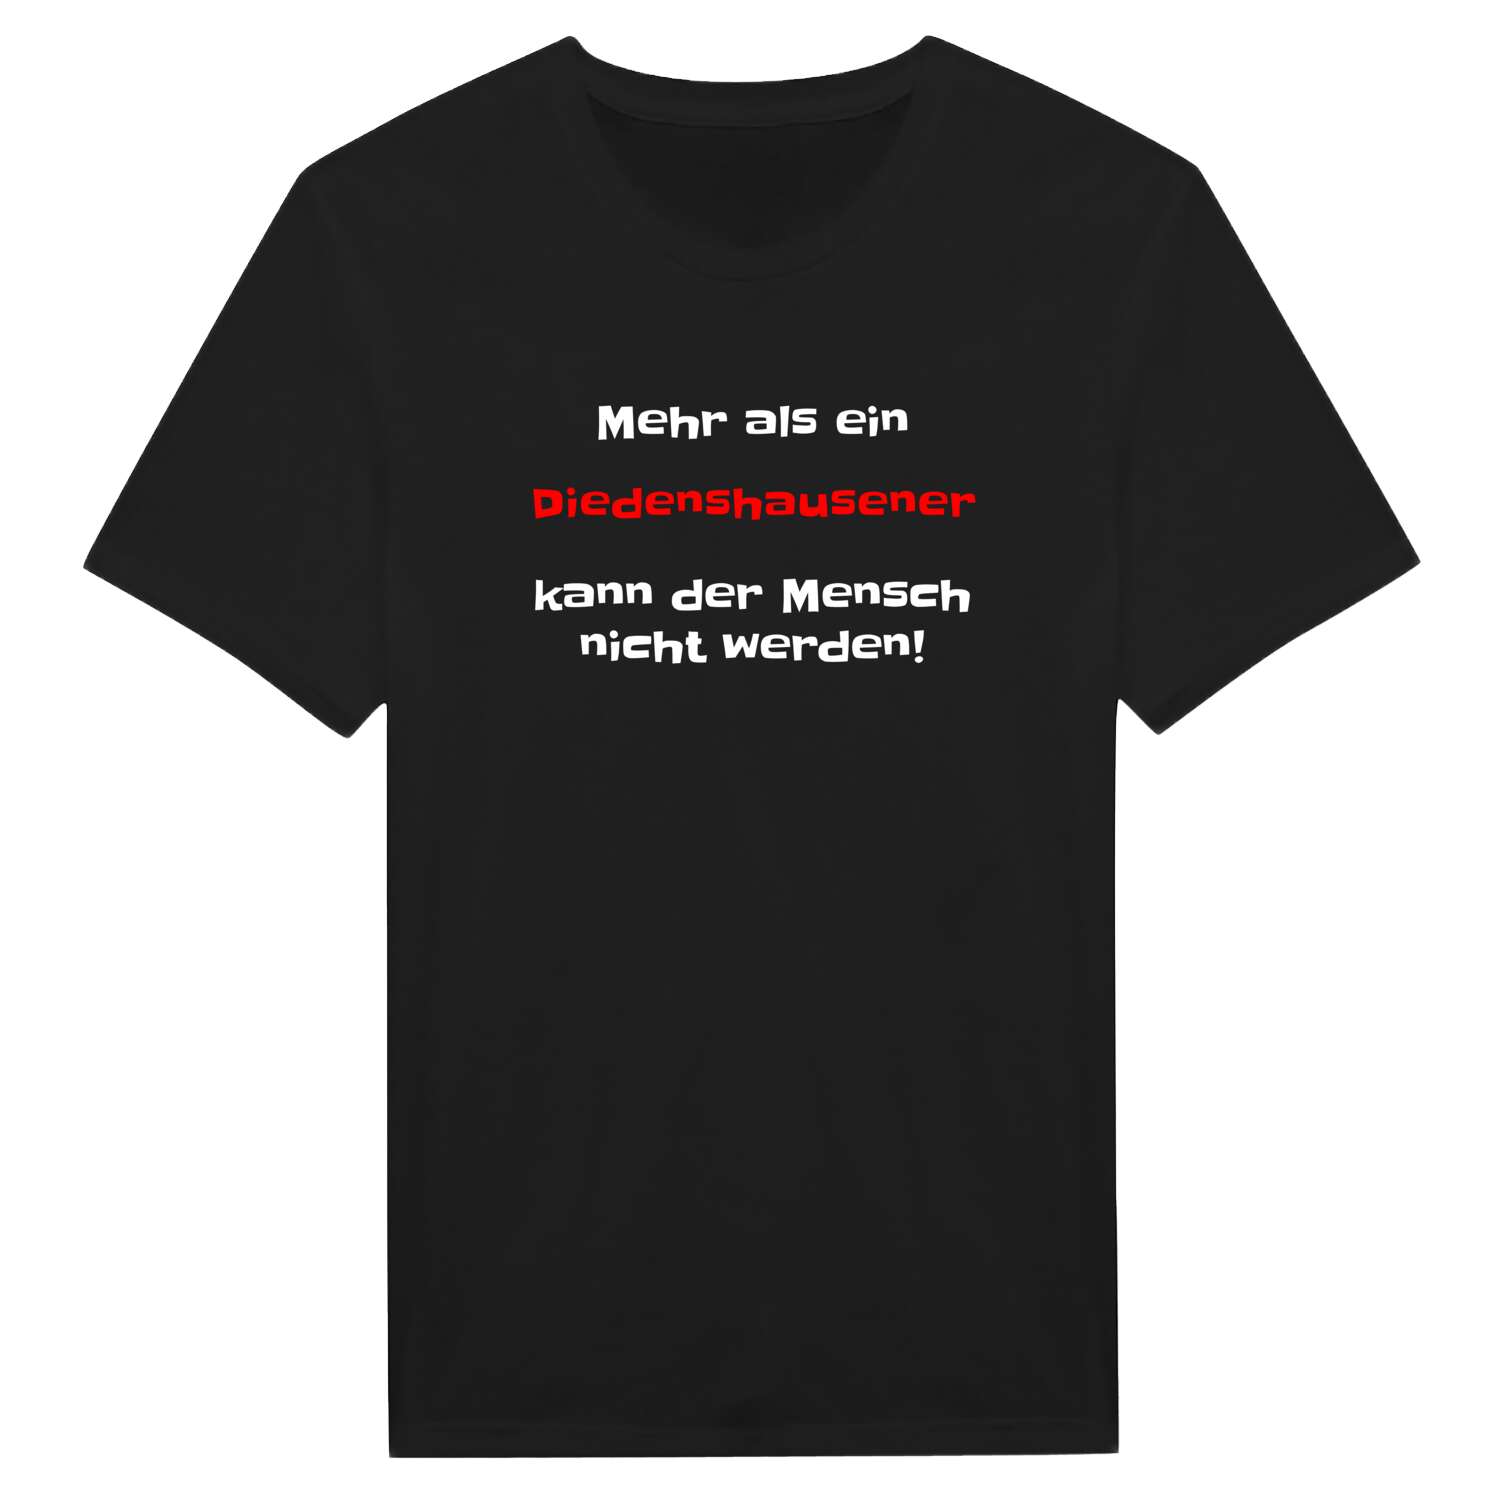 Diedenshausen T-Shirt »Mehr als ein«